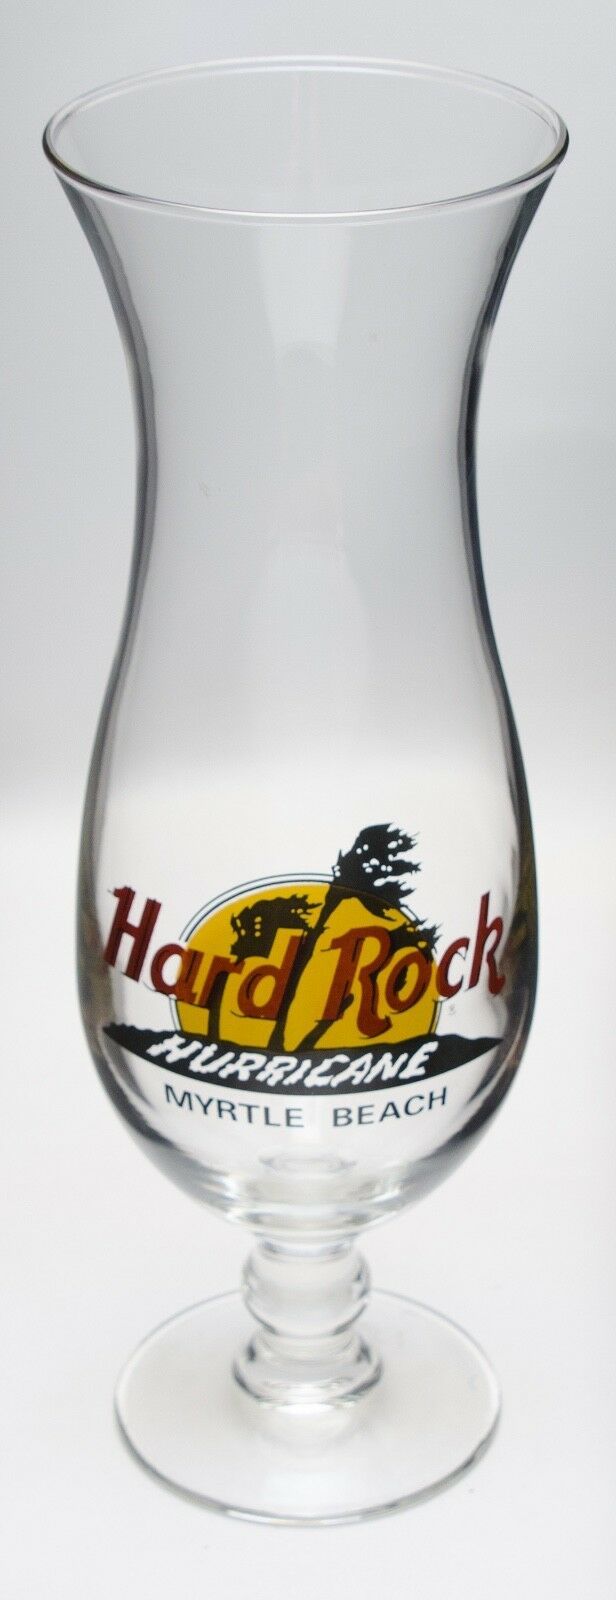 Hard Rock Cafe Hurricane Glass Myrtle Beach USA - $11.87